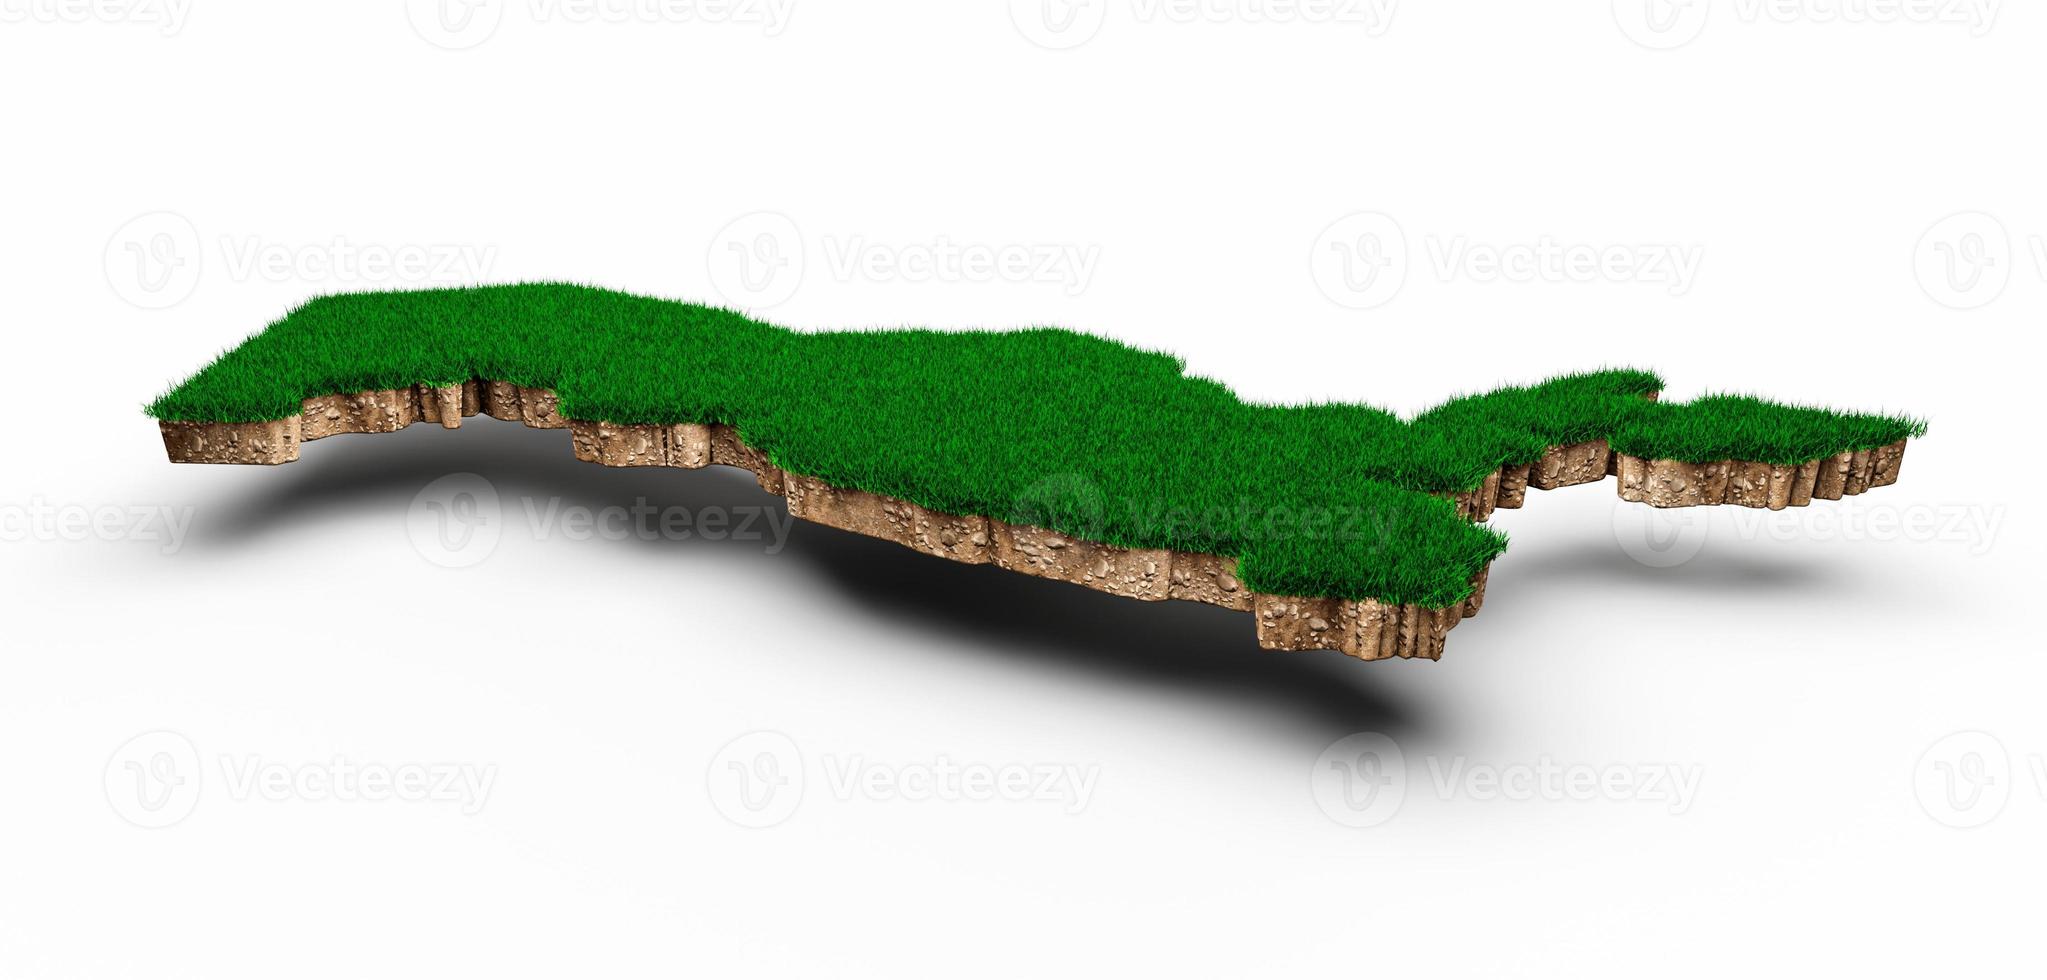 uzbekistan karta jord mark geologi tvärsnitt med grönt gräs och sten marken textur 3d illustration foto